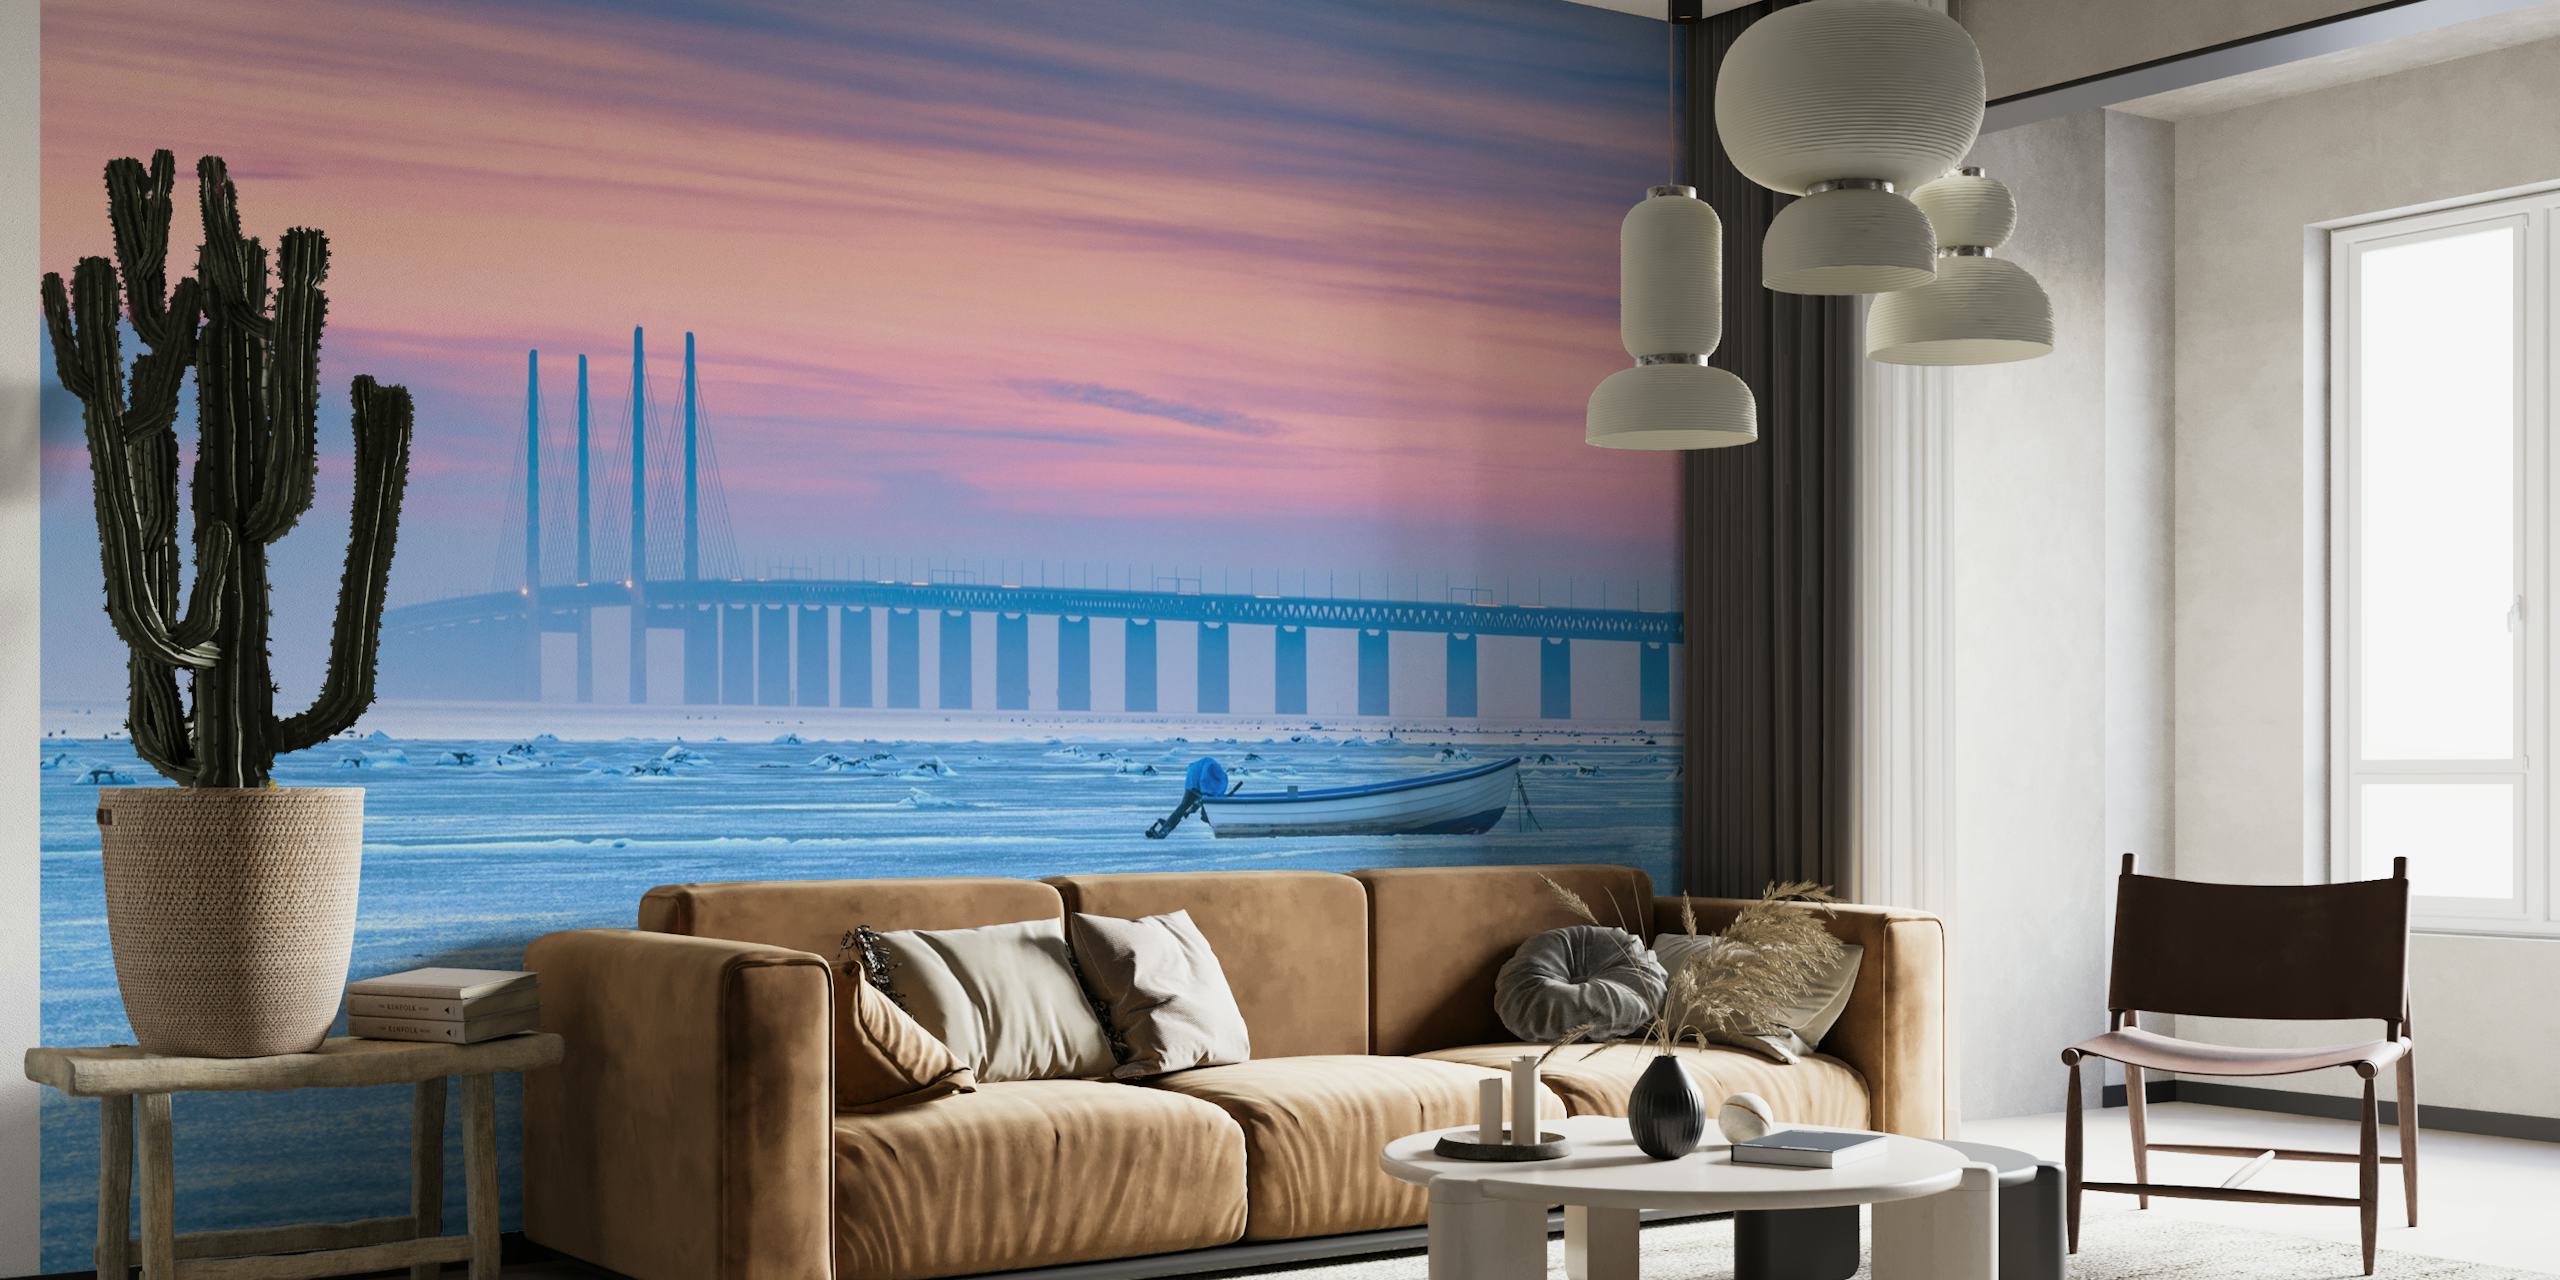 Une fresque murale représentant une mer gelée avec un ciel pastel calme, un pont lointain et un bateau solitaire